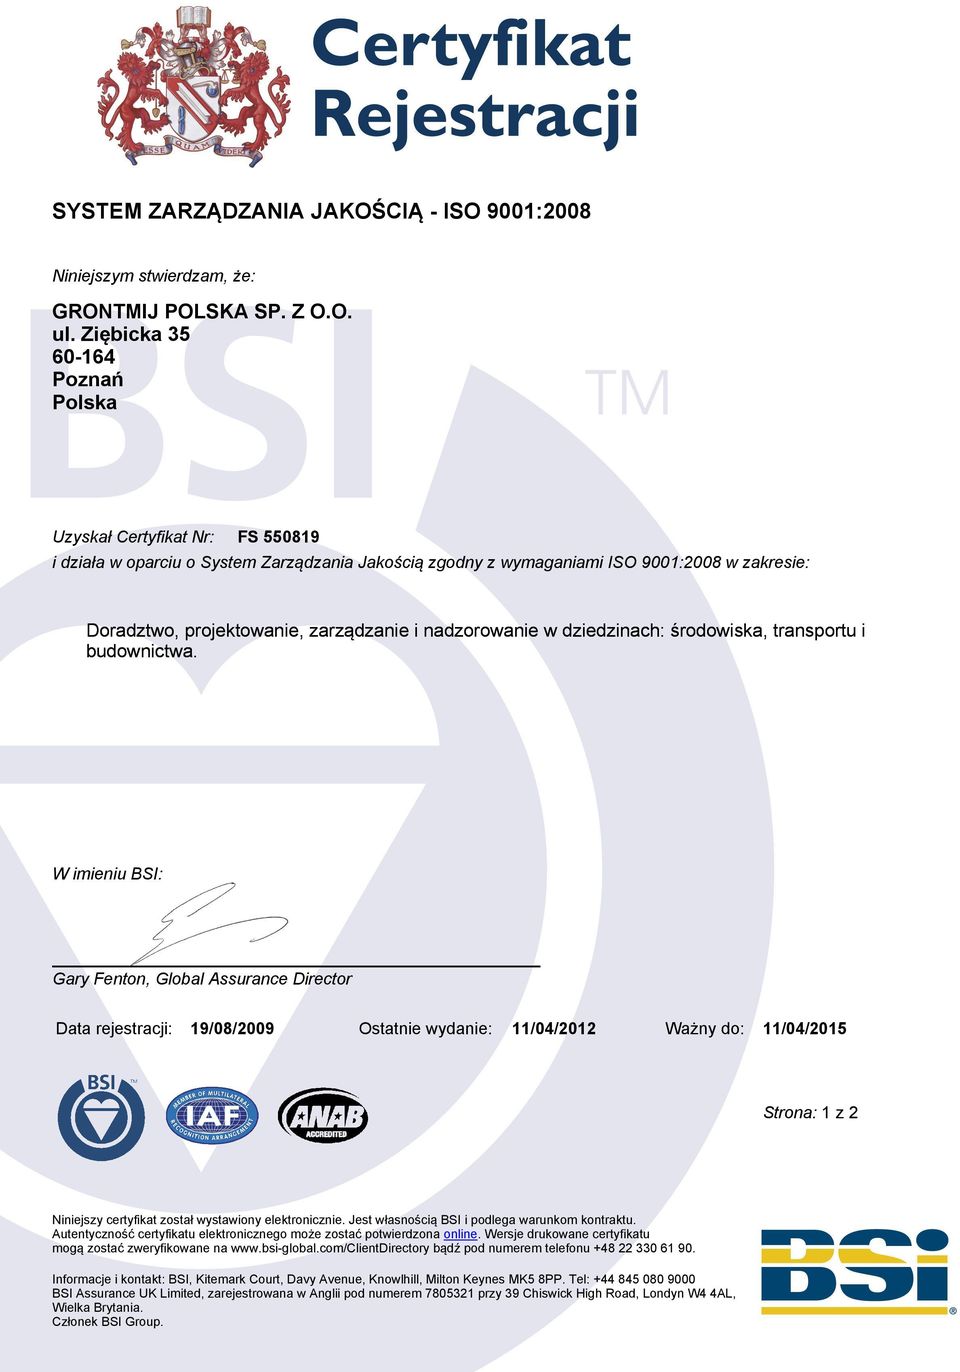 W imieniu BSI: Gary Fenton, Global Assurance Director Data rejestracji: 19/08/2009 Ostatnie wydanie: 11/04/2012 Ważny do: 11/04/2015 Strona: 1 z 2 Niniejszy certyfikat został wystawiony